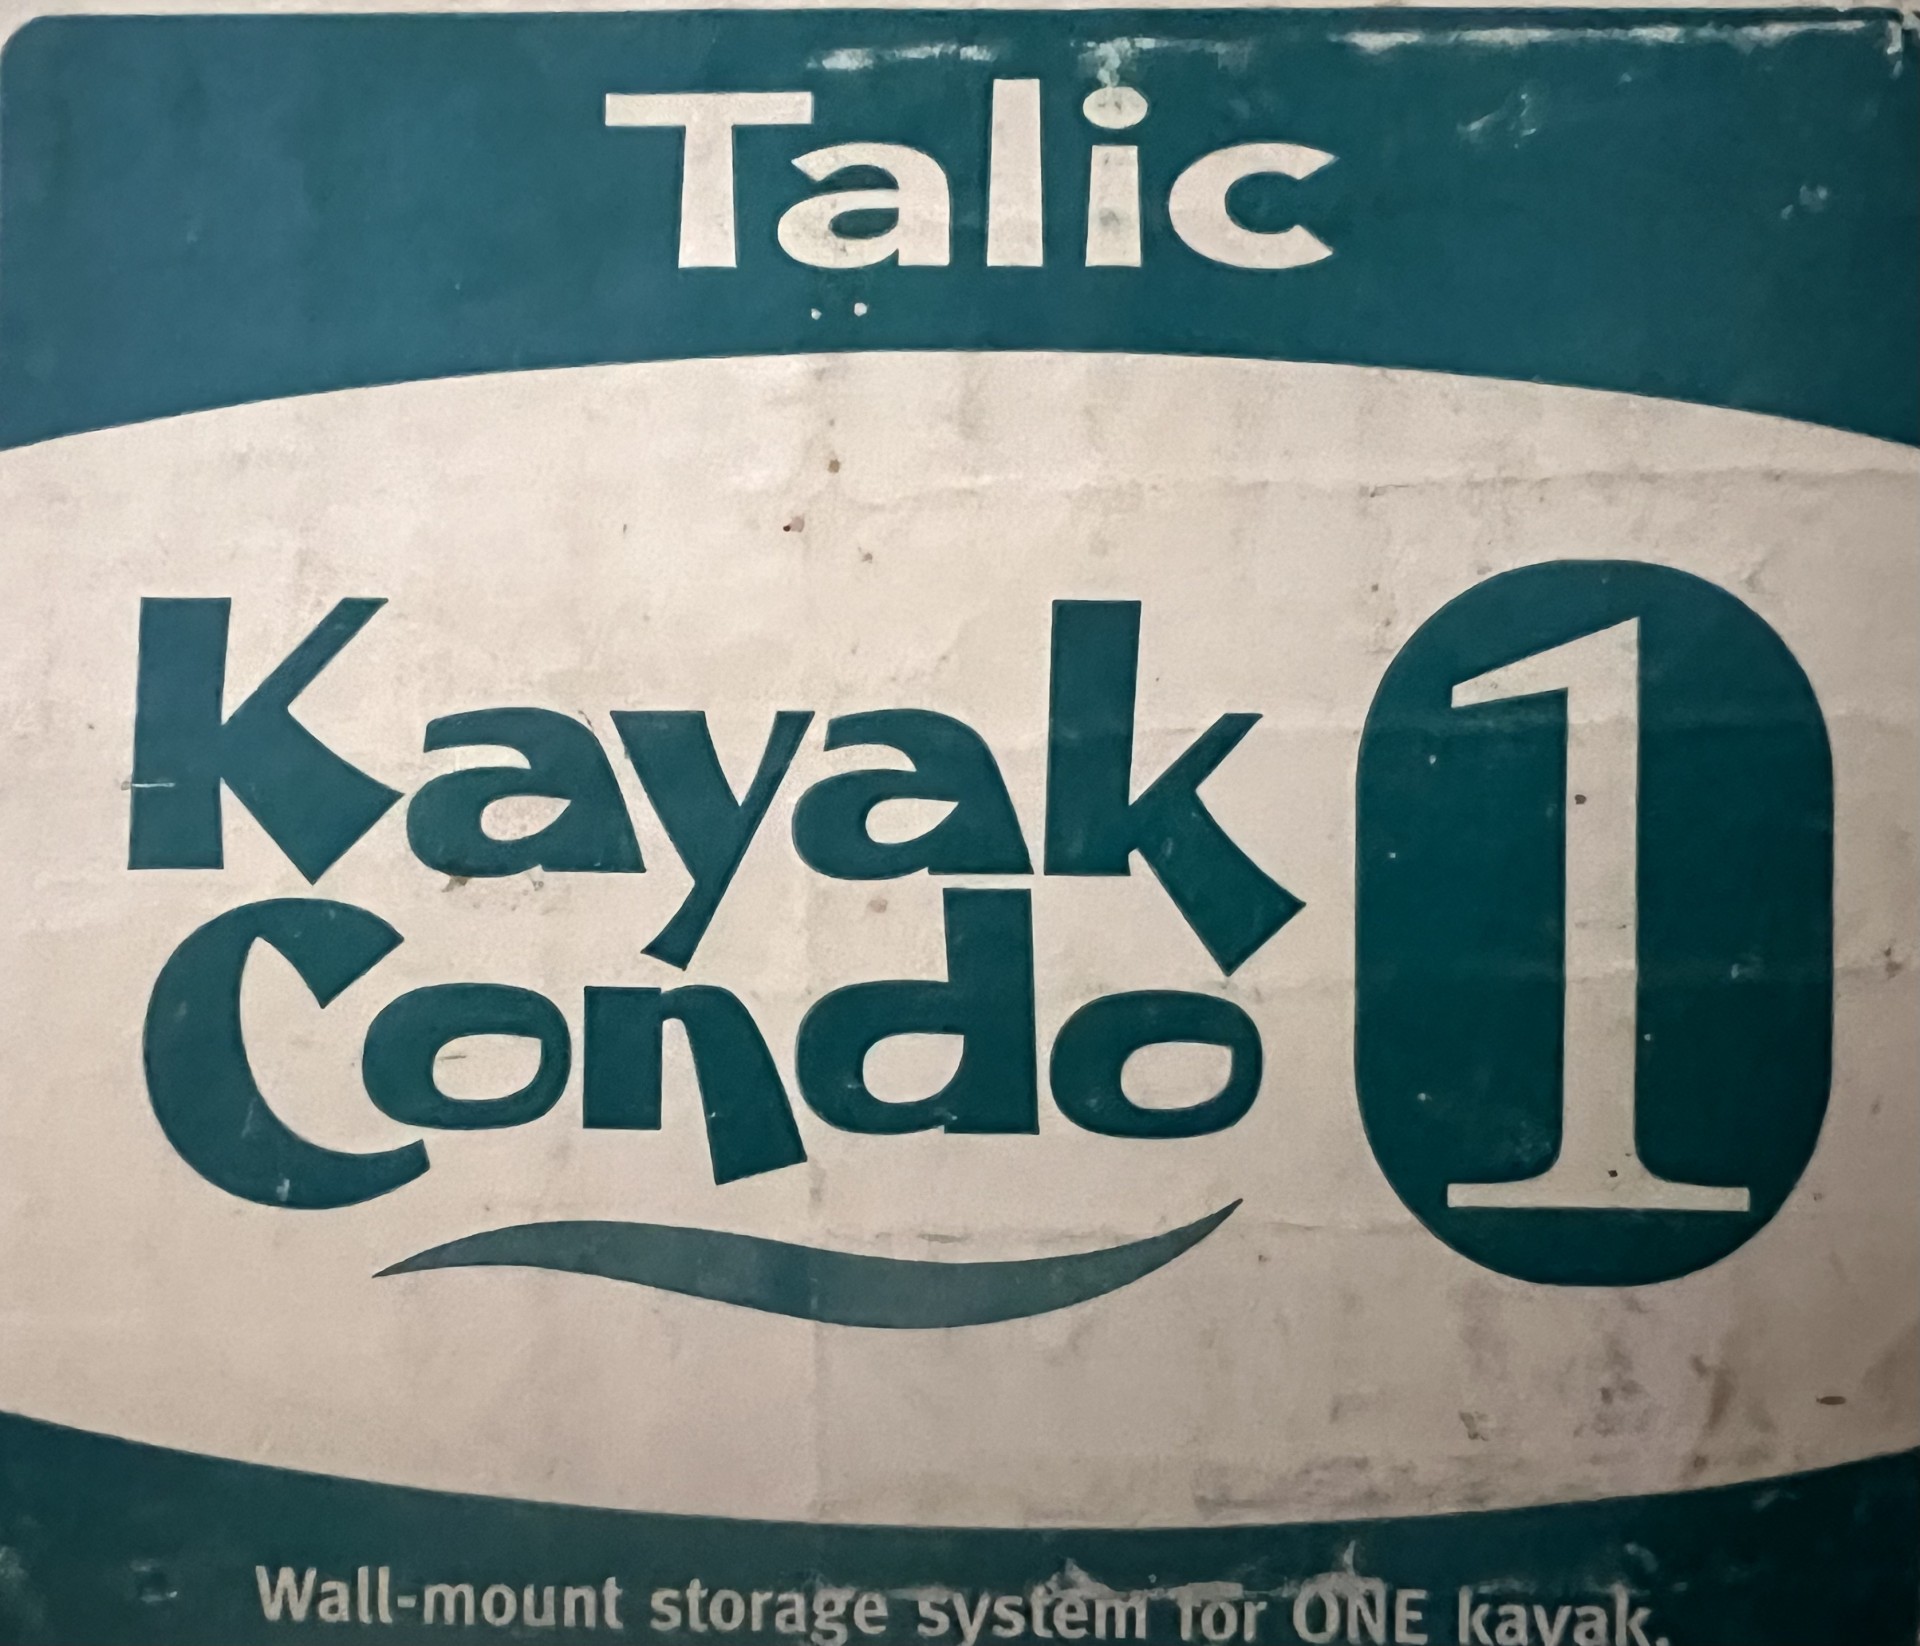 Talic Condo kayak storage.